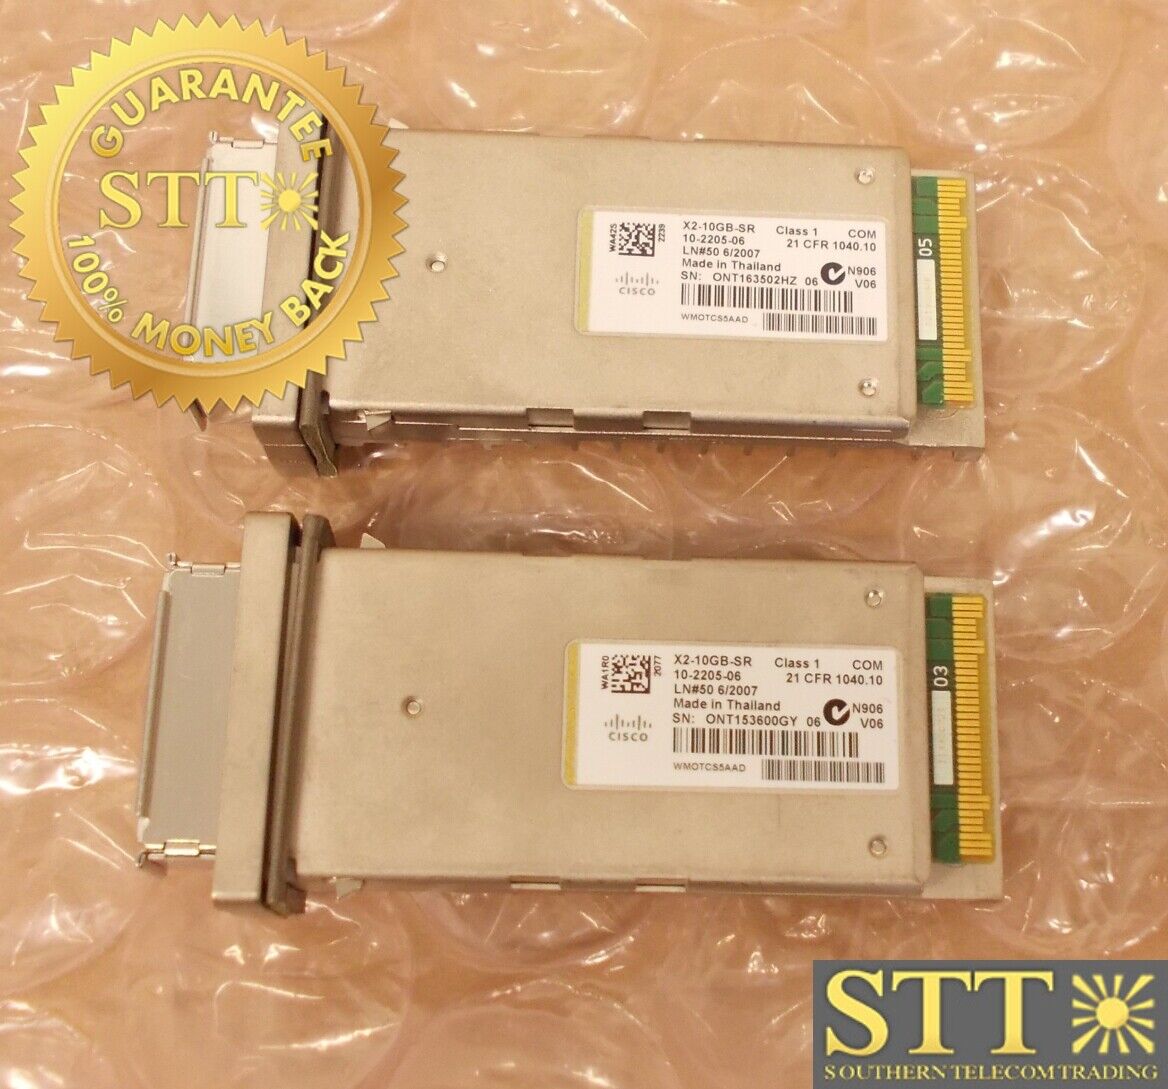 X2-10GB-SR CISCO CAT6513 10GBASE-SRX2 TRNSC MOD 10-2205-06 WMOTCS5AAD (LOT OF 2)